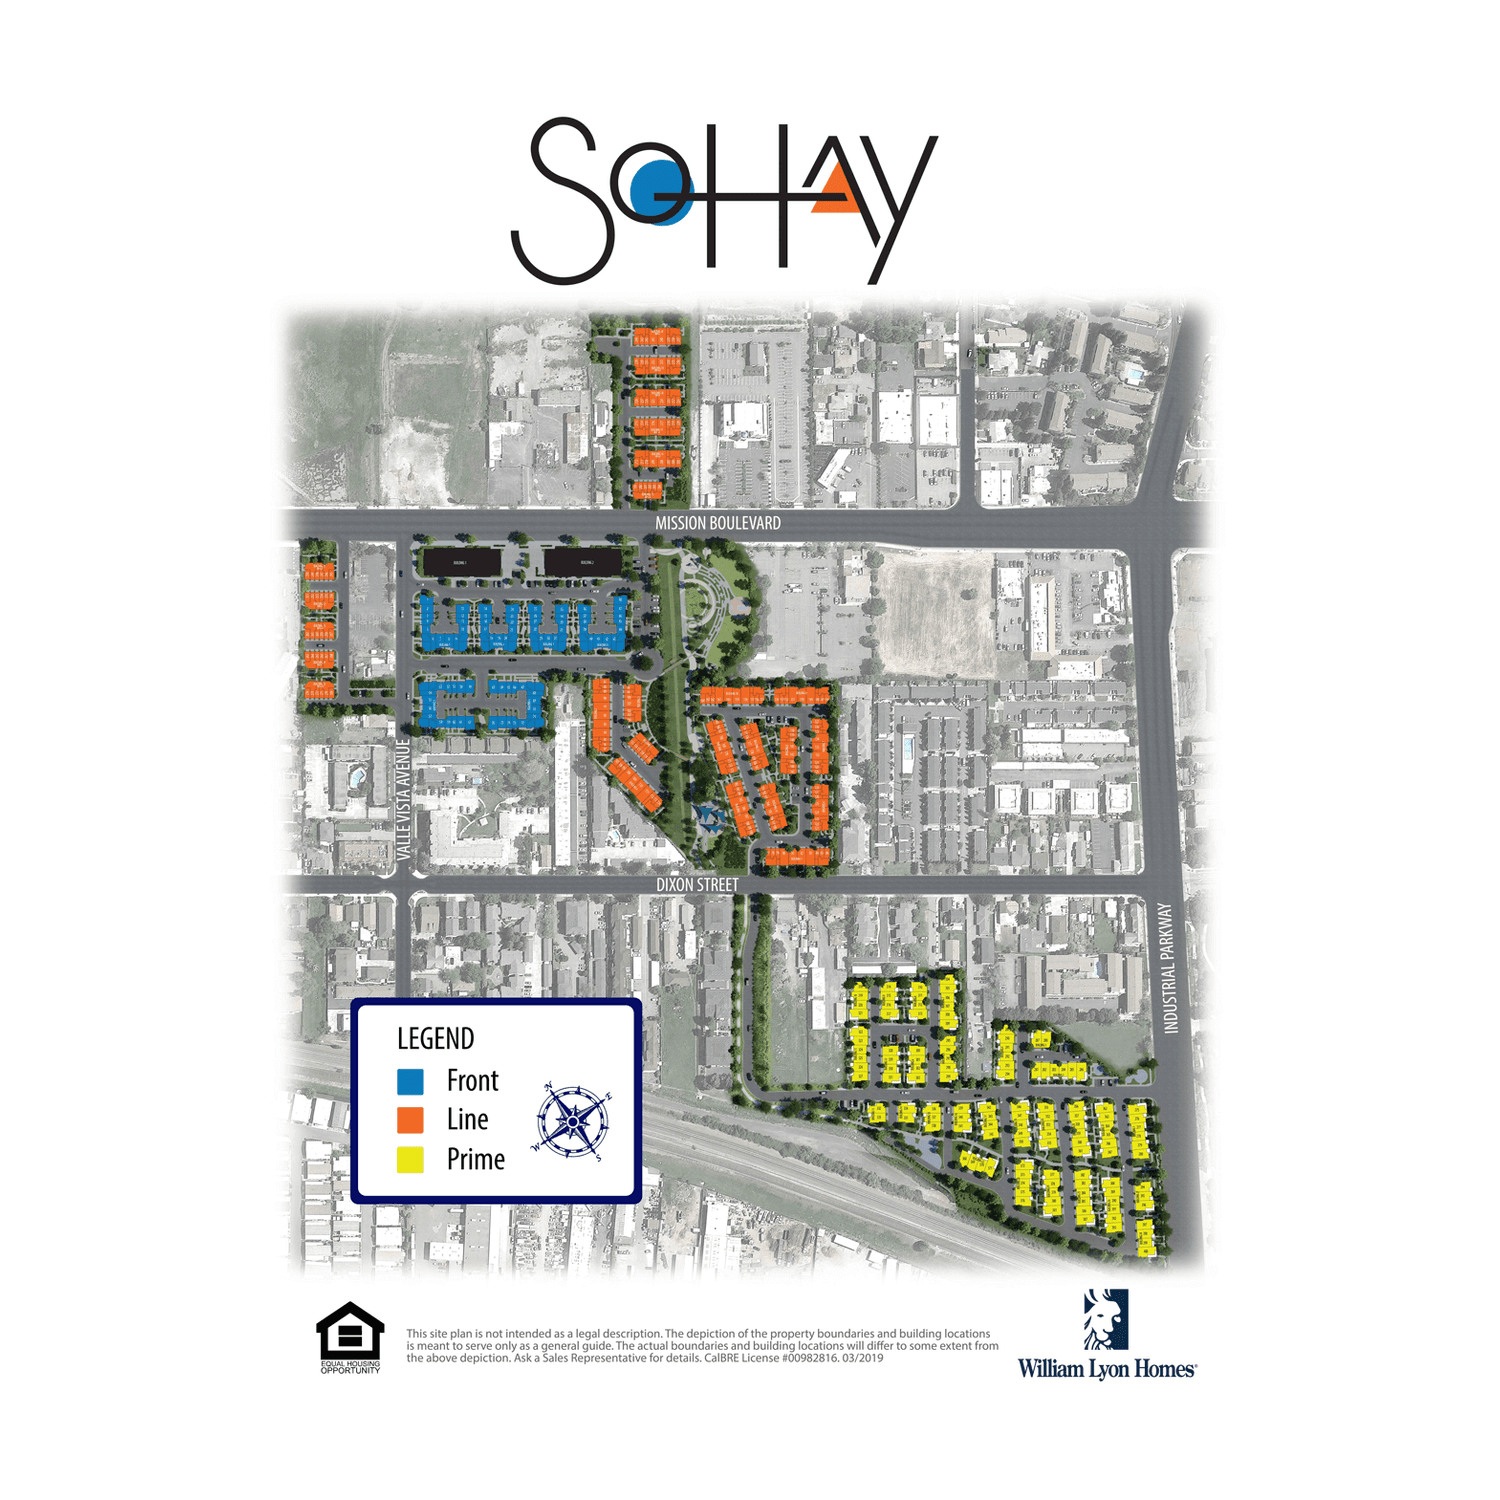 2. SoHay Prime建於 132 Nexa Court, Hayward, CA 94544